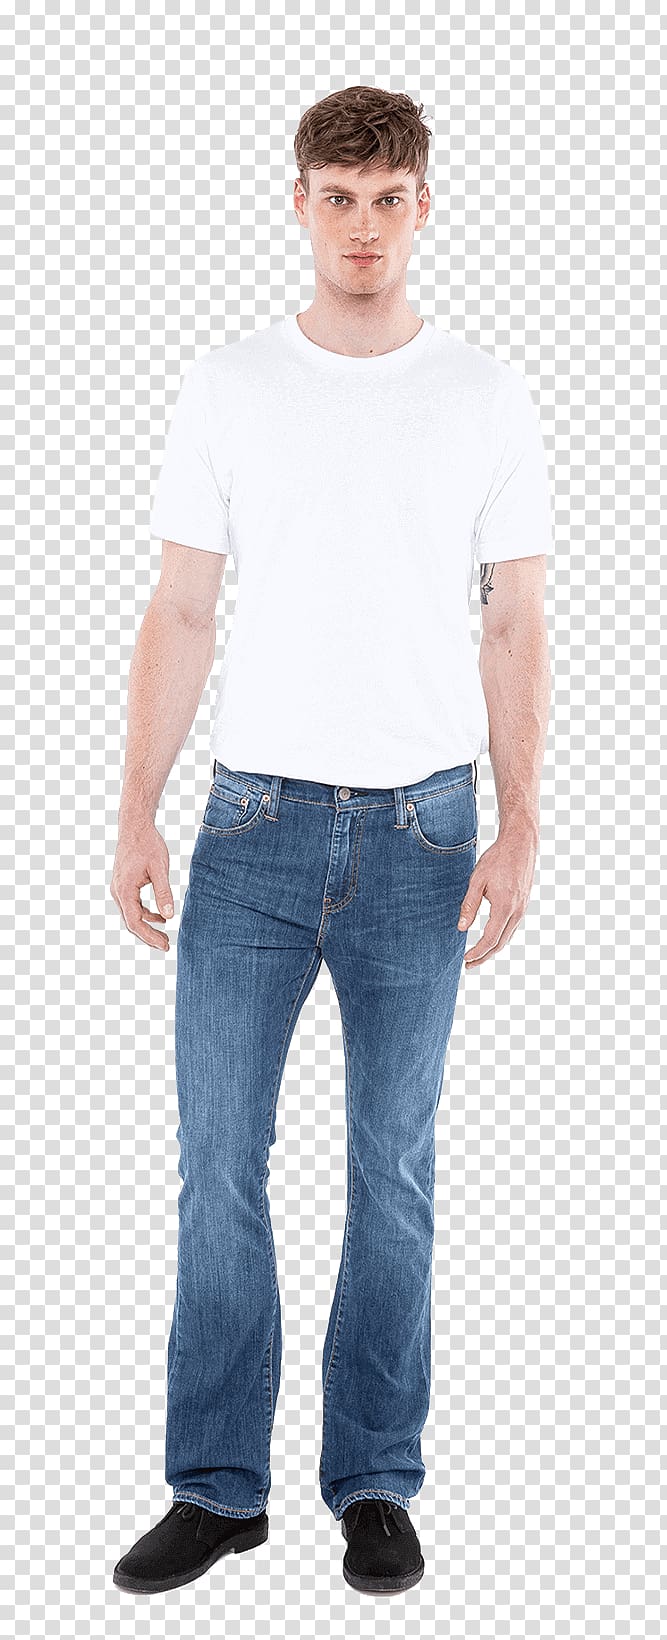 Jeans T-shirt Denim Slim-fit pants, mens jeans transparent background PNG clipart